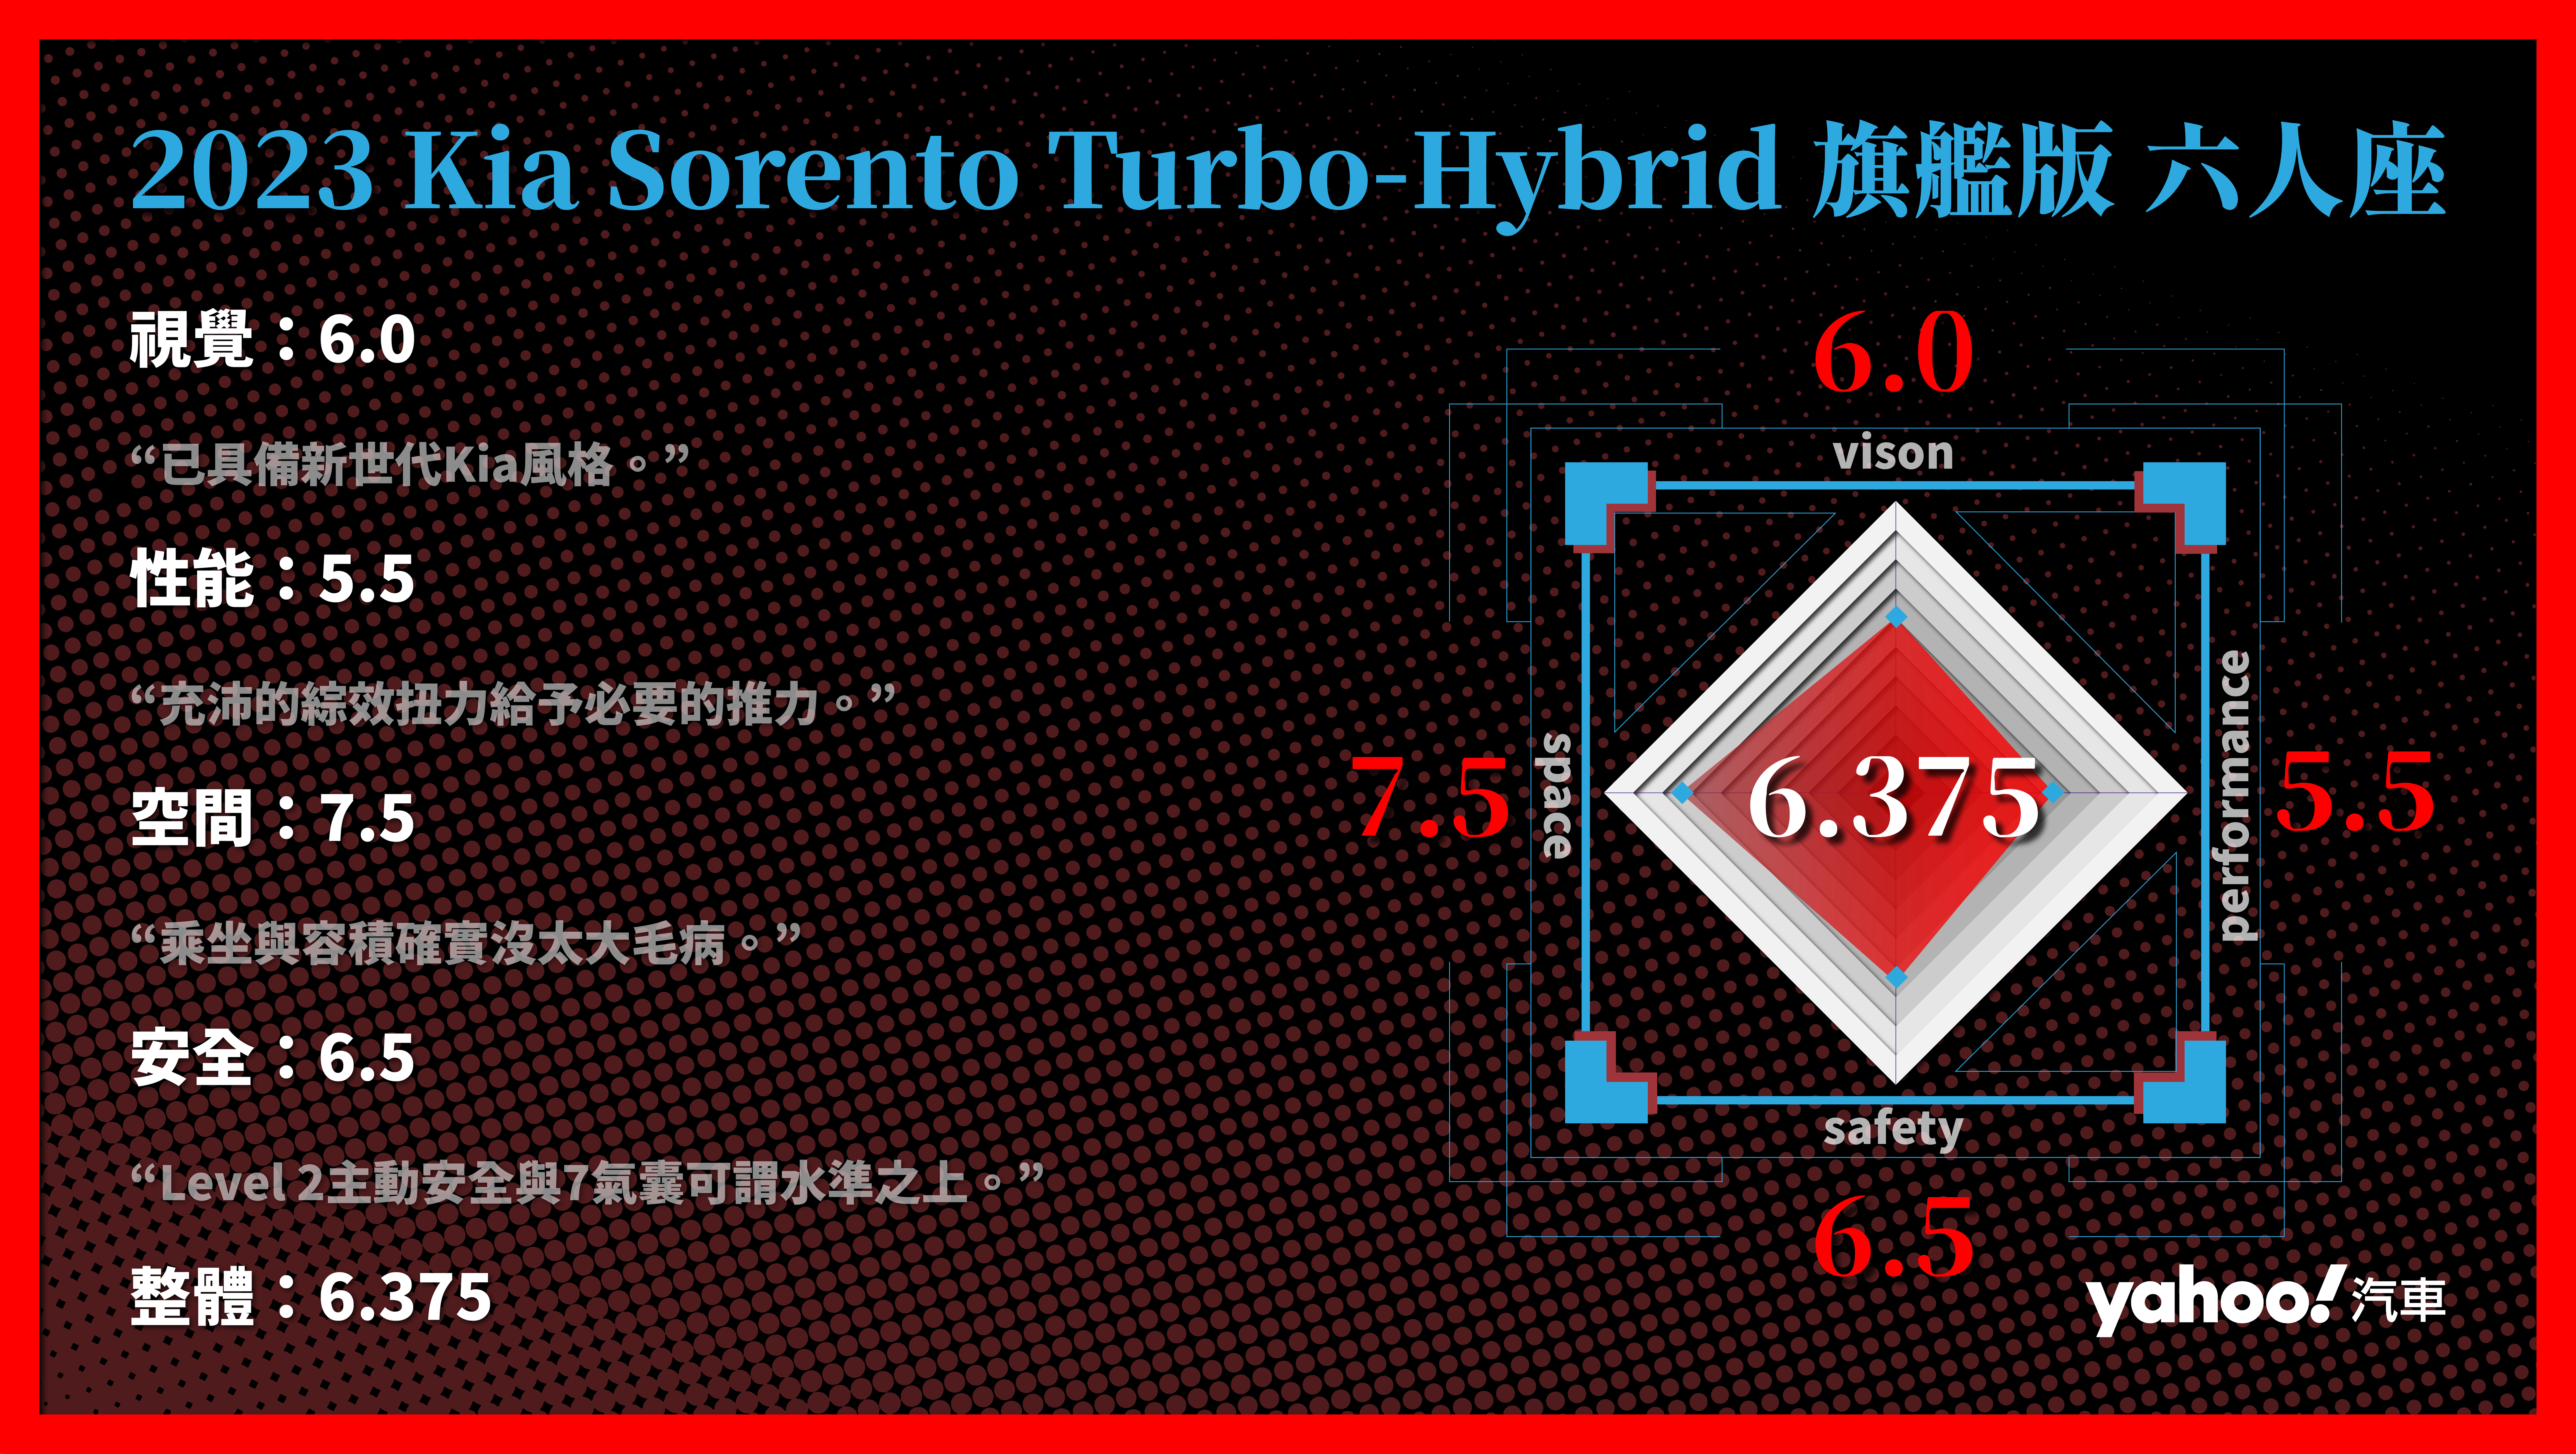 2023 Kia Sorento Turbo-Hybrid旗艦版六人座 分項評比。